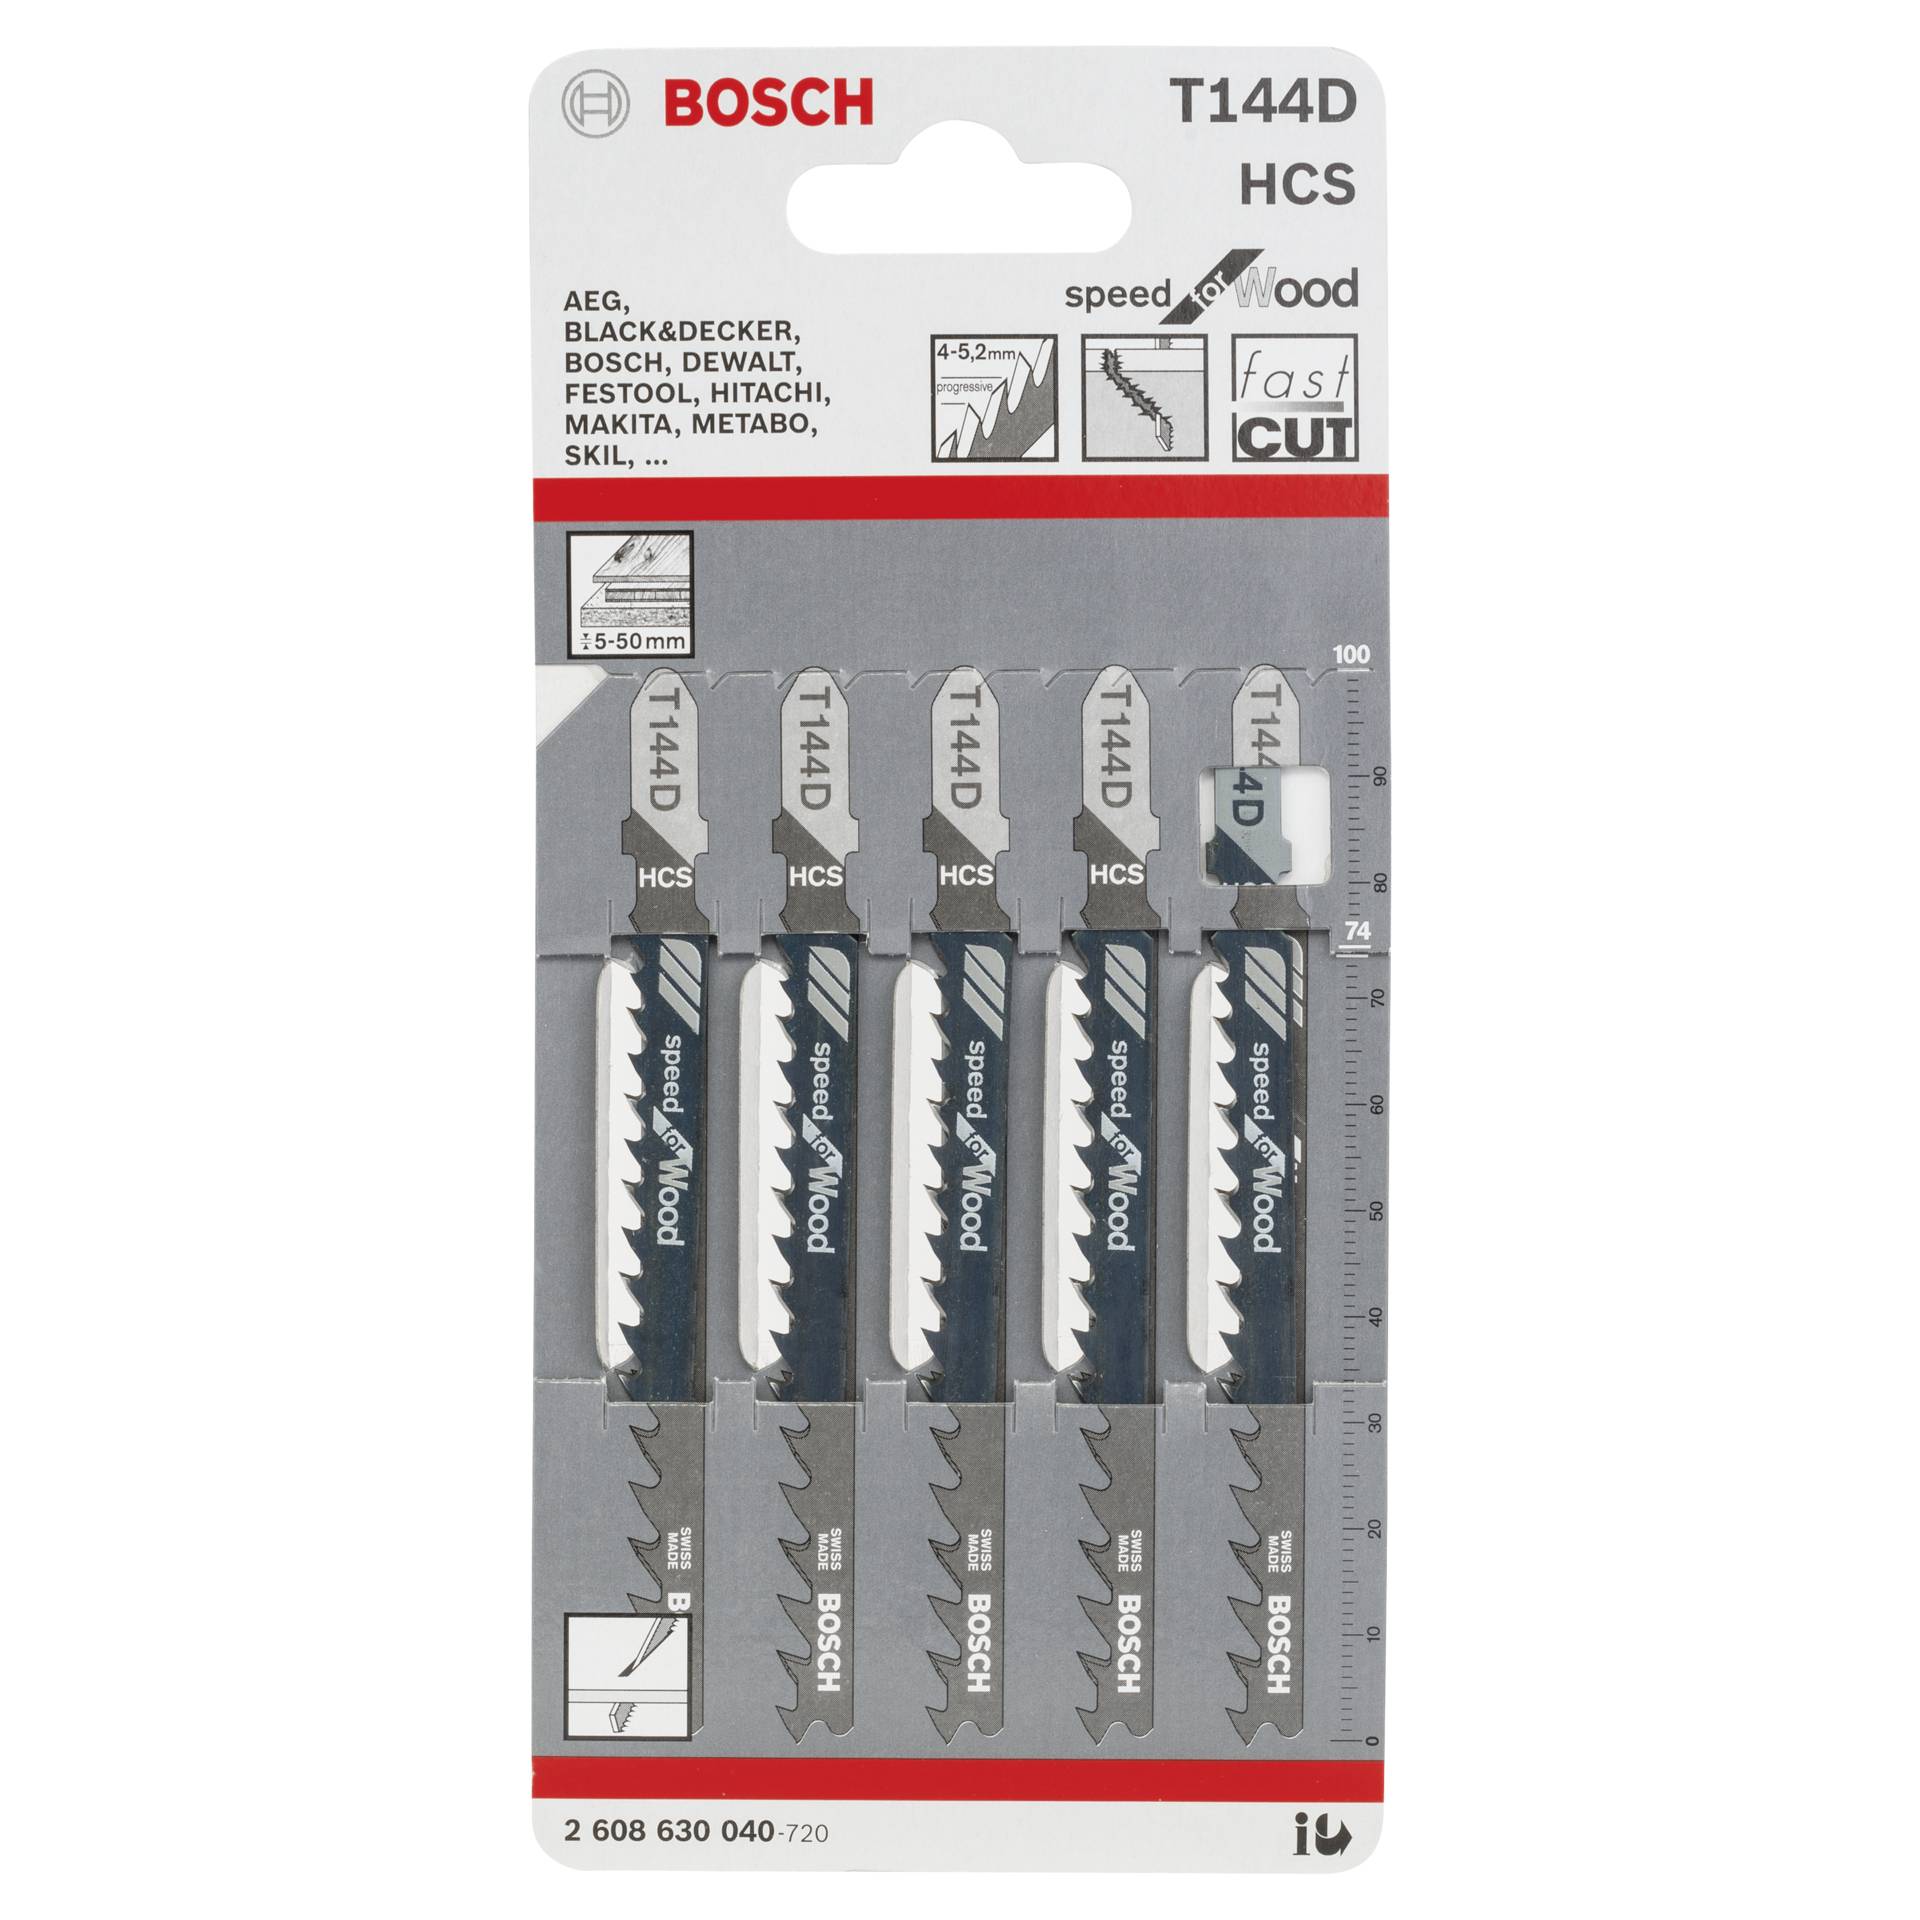 Bosch 5 Stichsägeblätter T 144 D